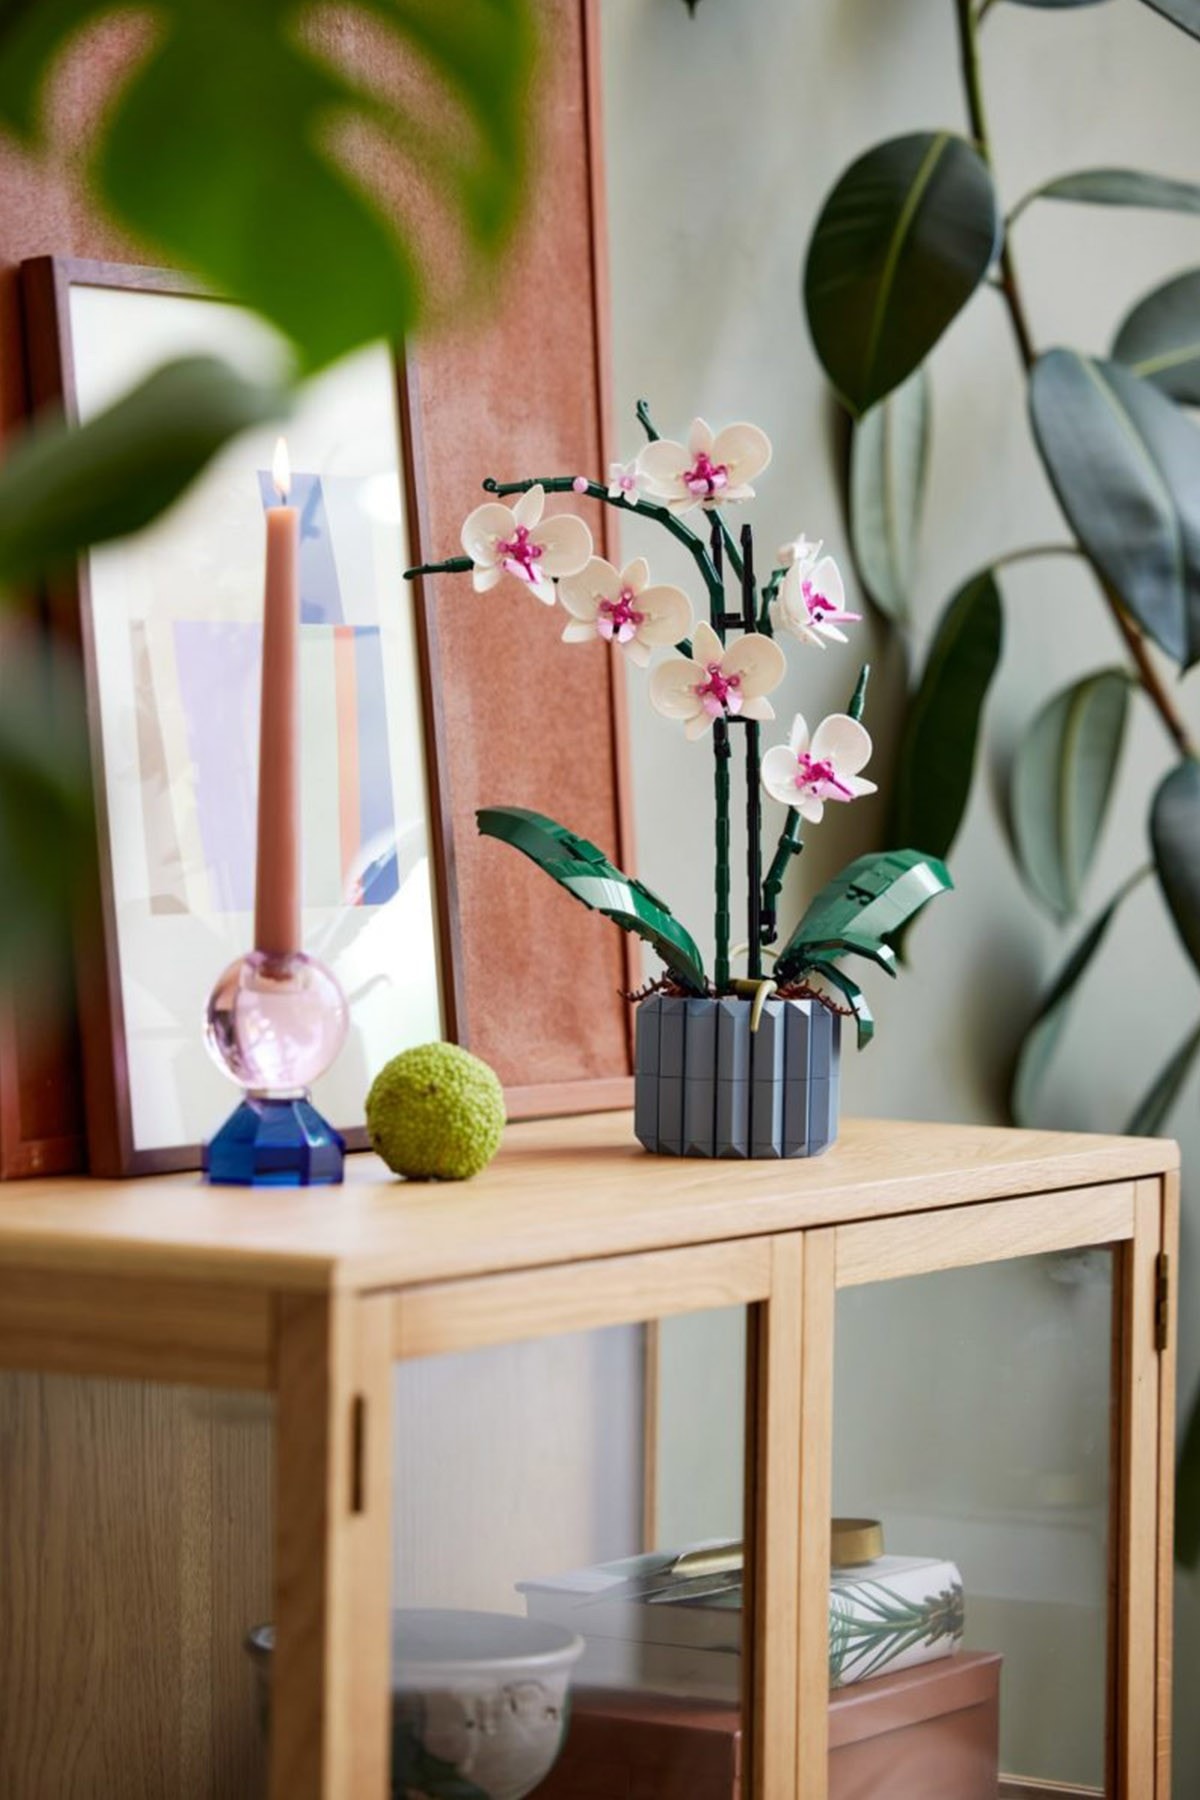 レゴ®︎から“水やり不要”な胡蝶蘭と多肉植物が登場 LEGO Creator Expert Botanical Collection Orchid Succulents Teaser